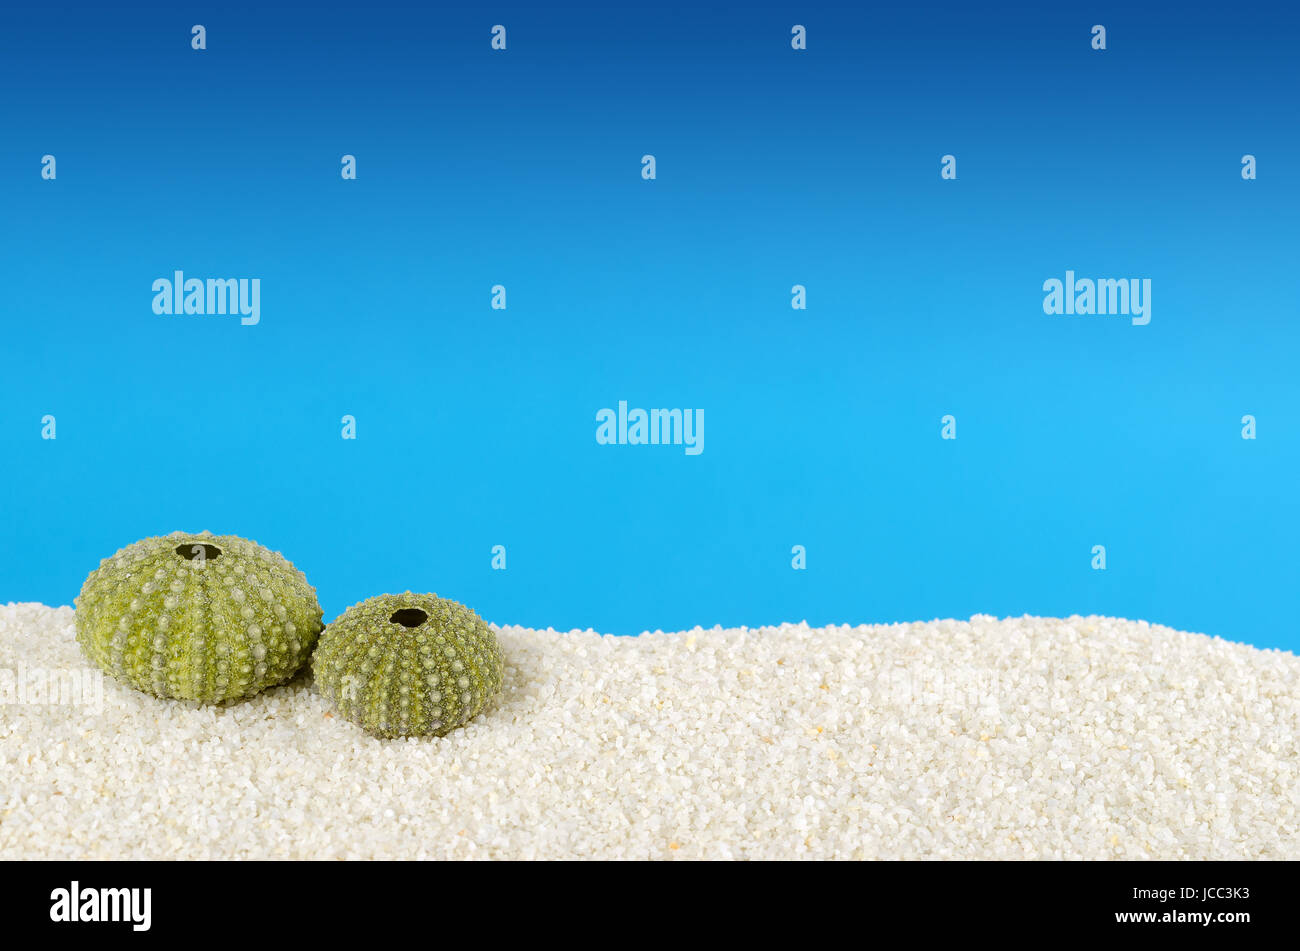 Il verde dei ricci di mare shell sulla sabbia bianca con sfondo blu. Urchin, anche riccio di mare, con endoskeleton globulari, chiamato test. Psammechinus miliaris. Foto Stock